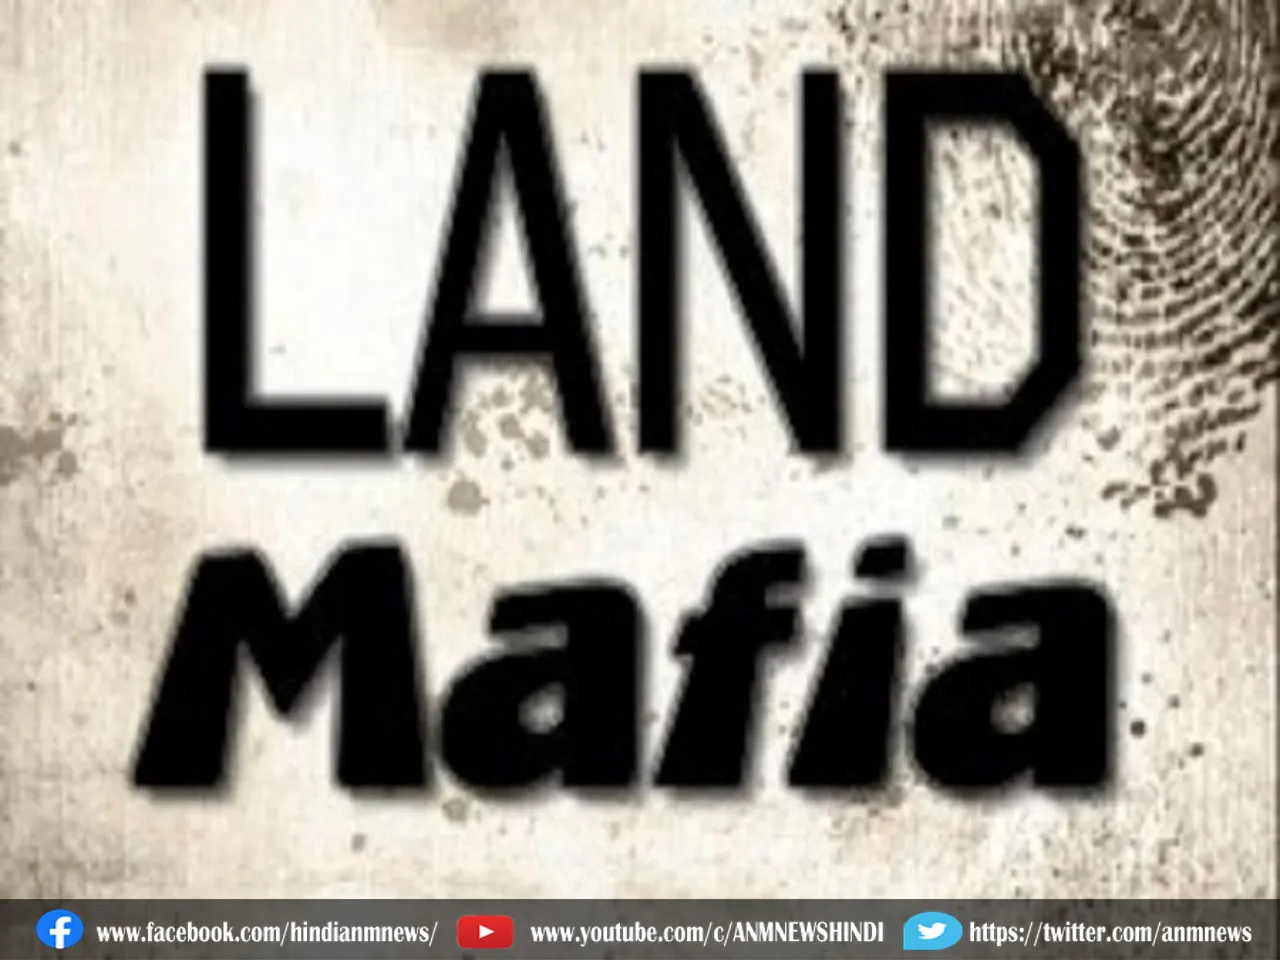 12 land mafia